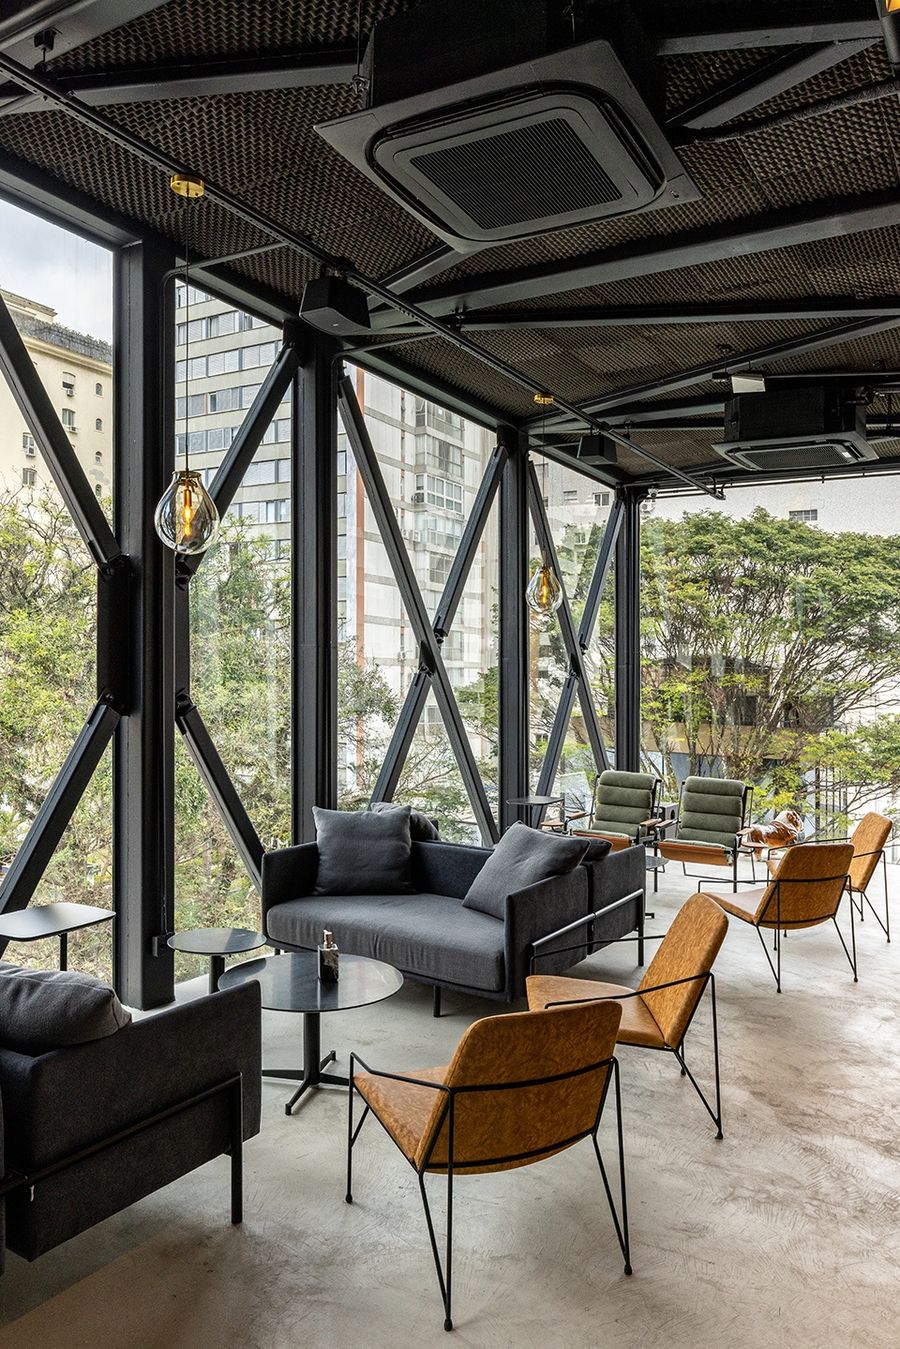 Galeria Arquitetos + Terra Capo | BETC 圣保罗Havas咖啡店